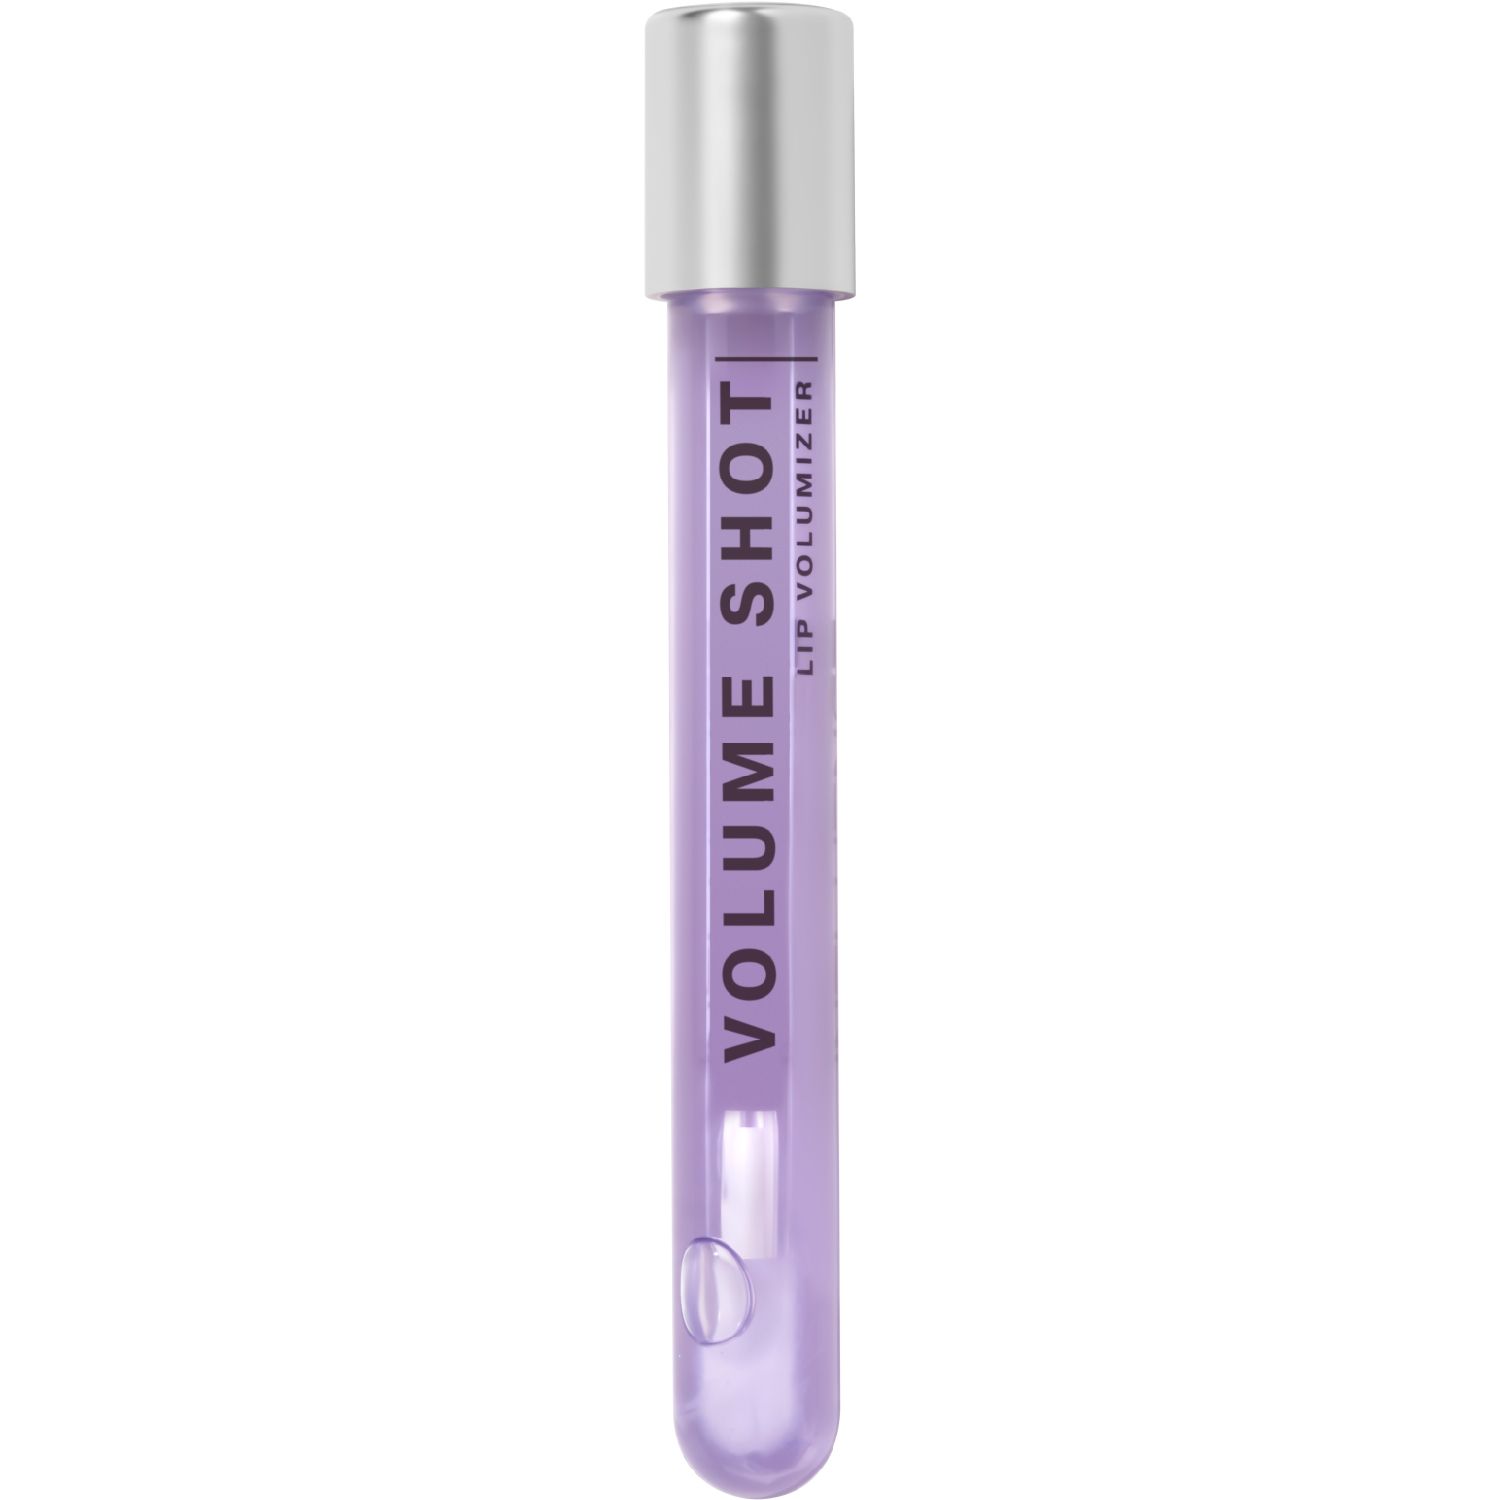 Блеск для губ Influence Beauty Volume Shot увлажняющий, 01 полупрозрачный фиолетовый, 6 мл блеск для губ rouge elixir 09 загадочный лиловый фиолетовый